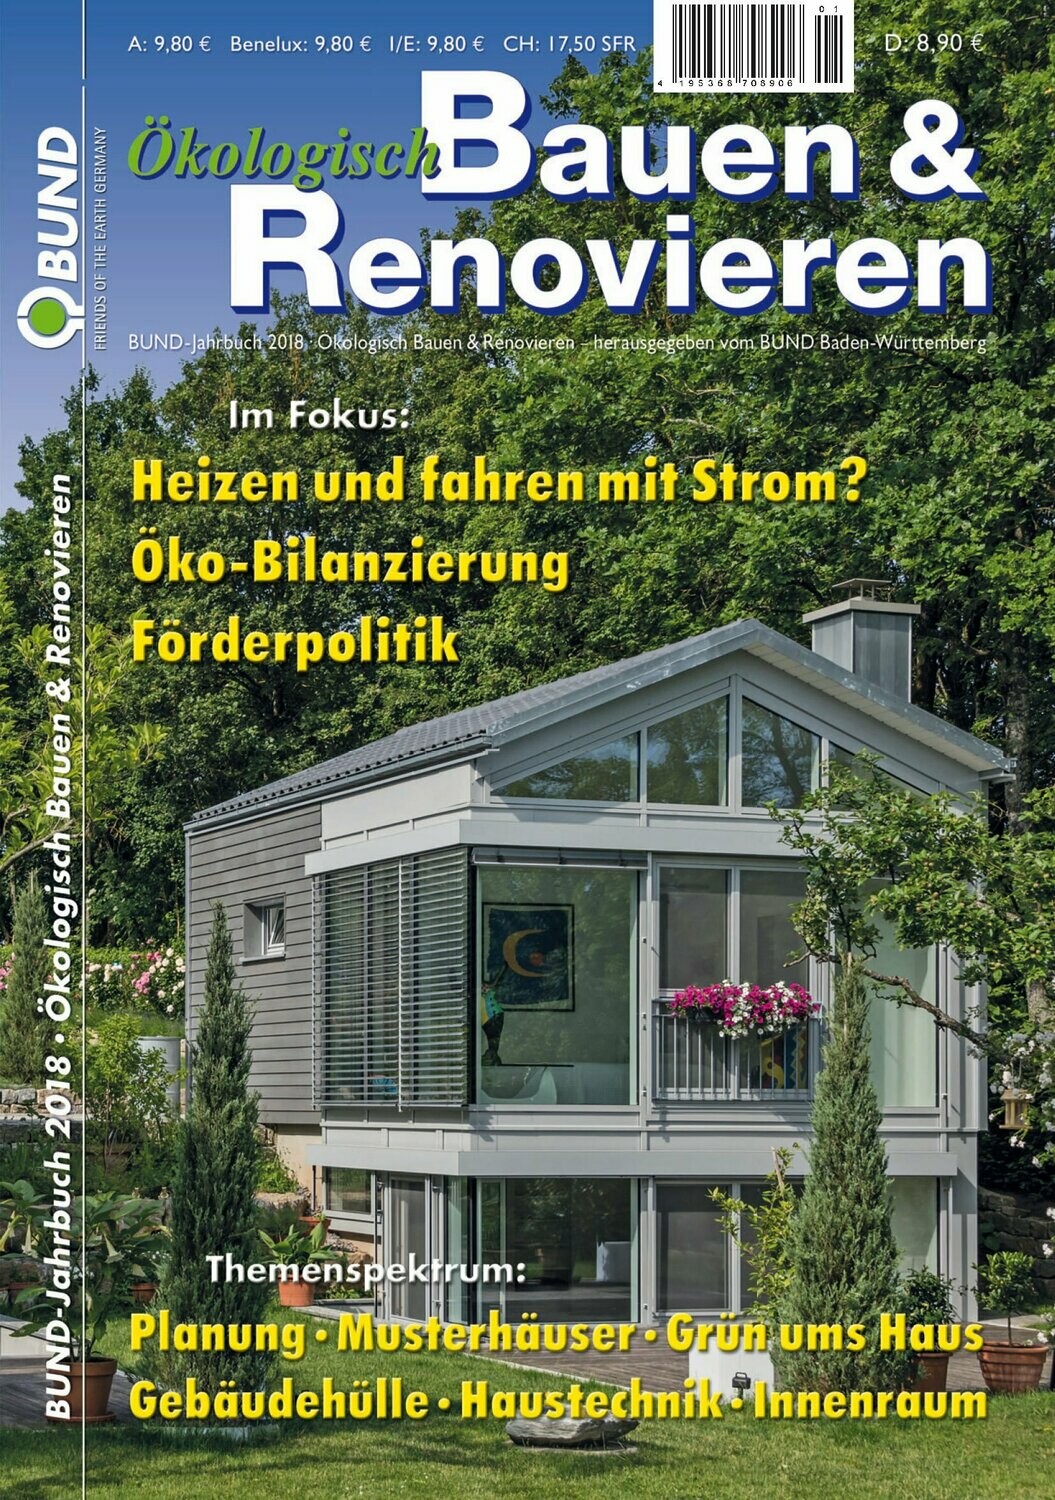 Ökologisch Bauen & Renovieren 2018 (e-paper)